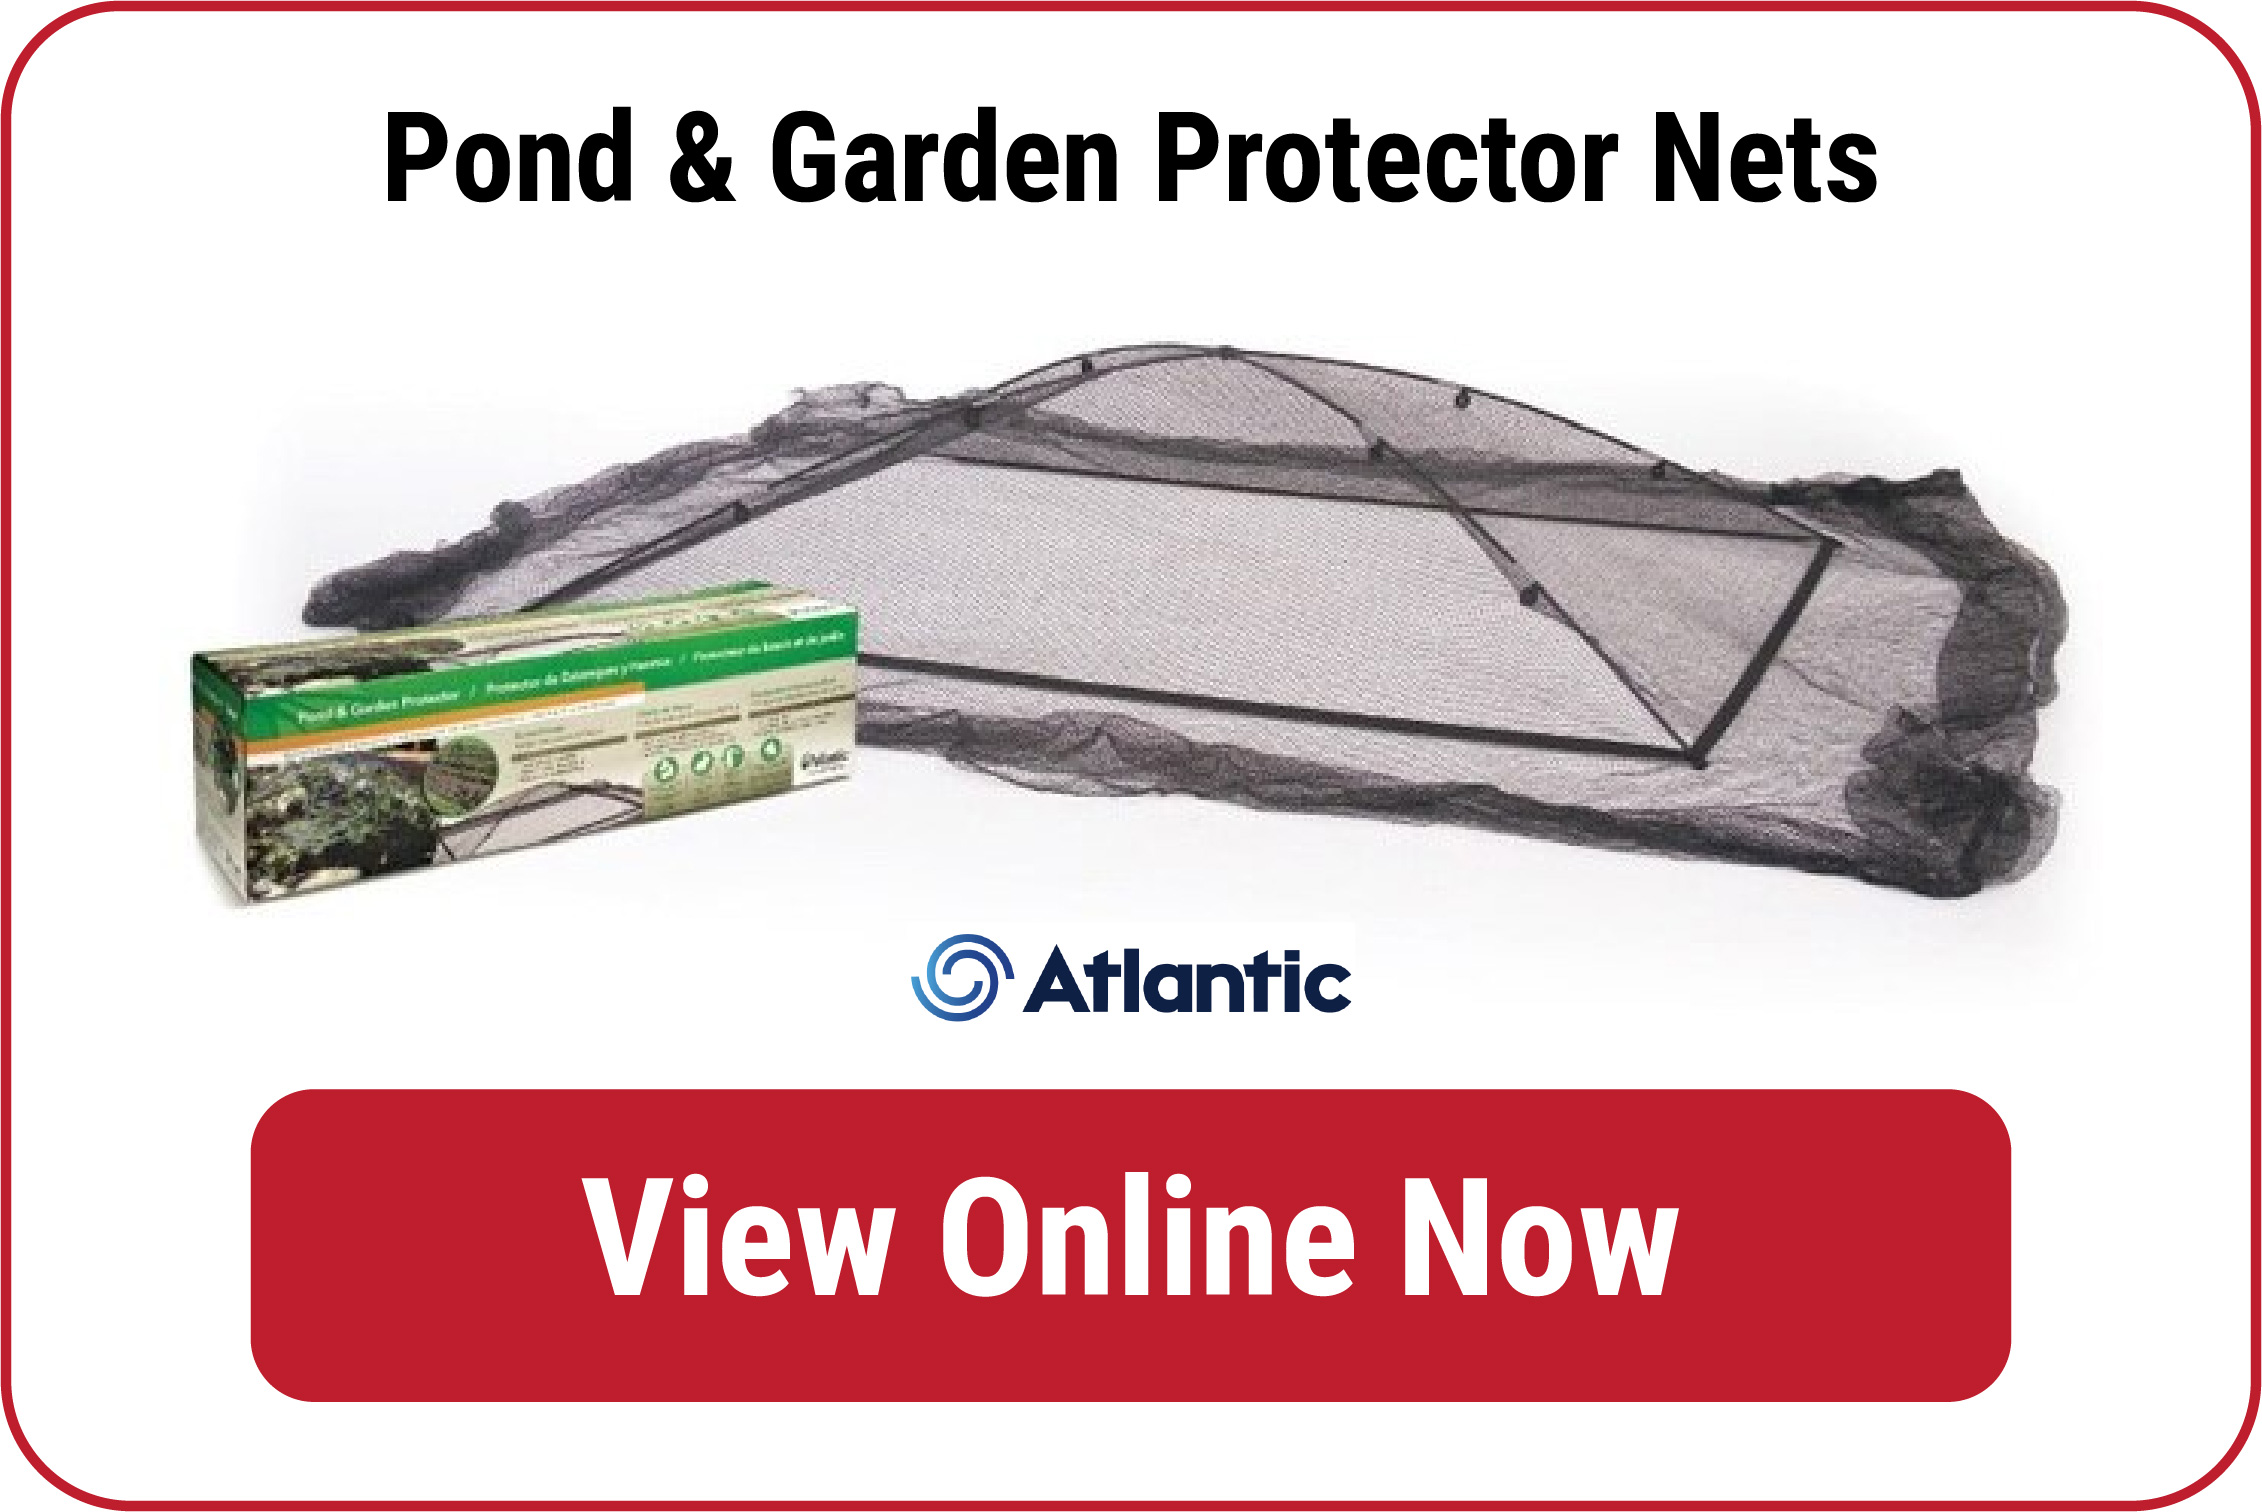 Atlantic Water Garden Pond Nets